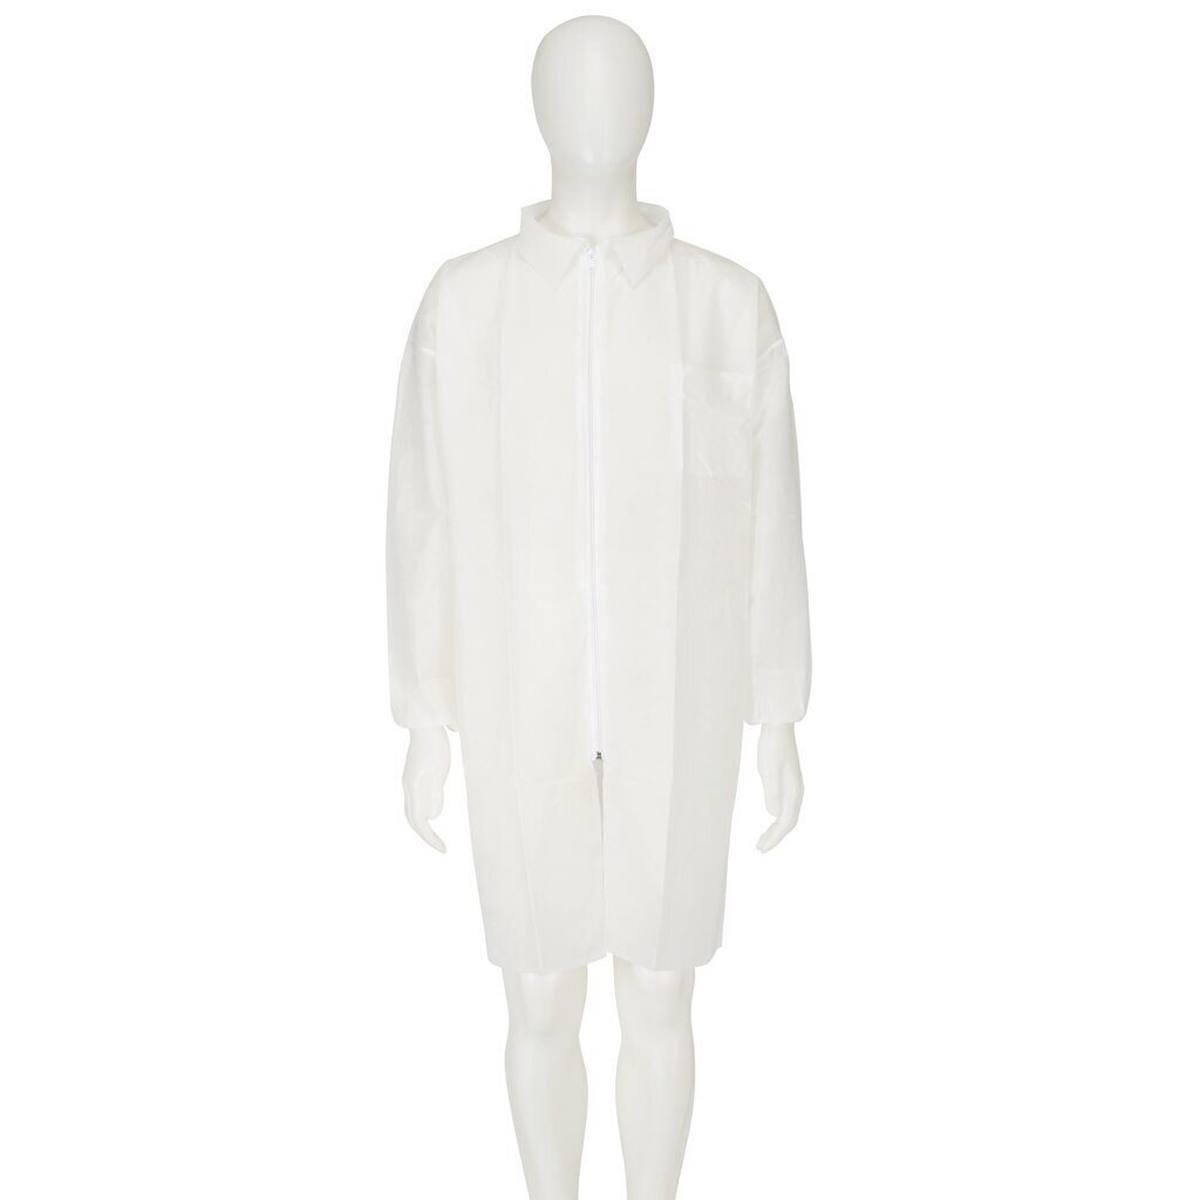 cappotto 3M 4400, bianco, taglia M, materiale 100% polipropilene, traspirante, molto leggero, con chiusura a zip